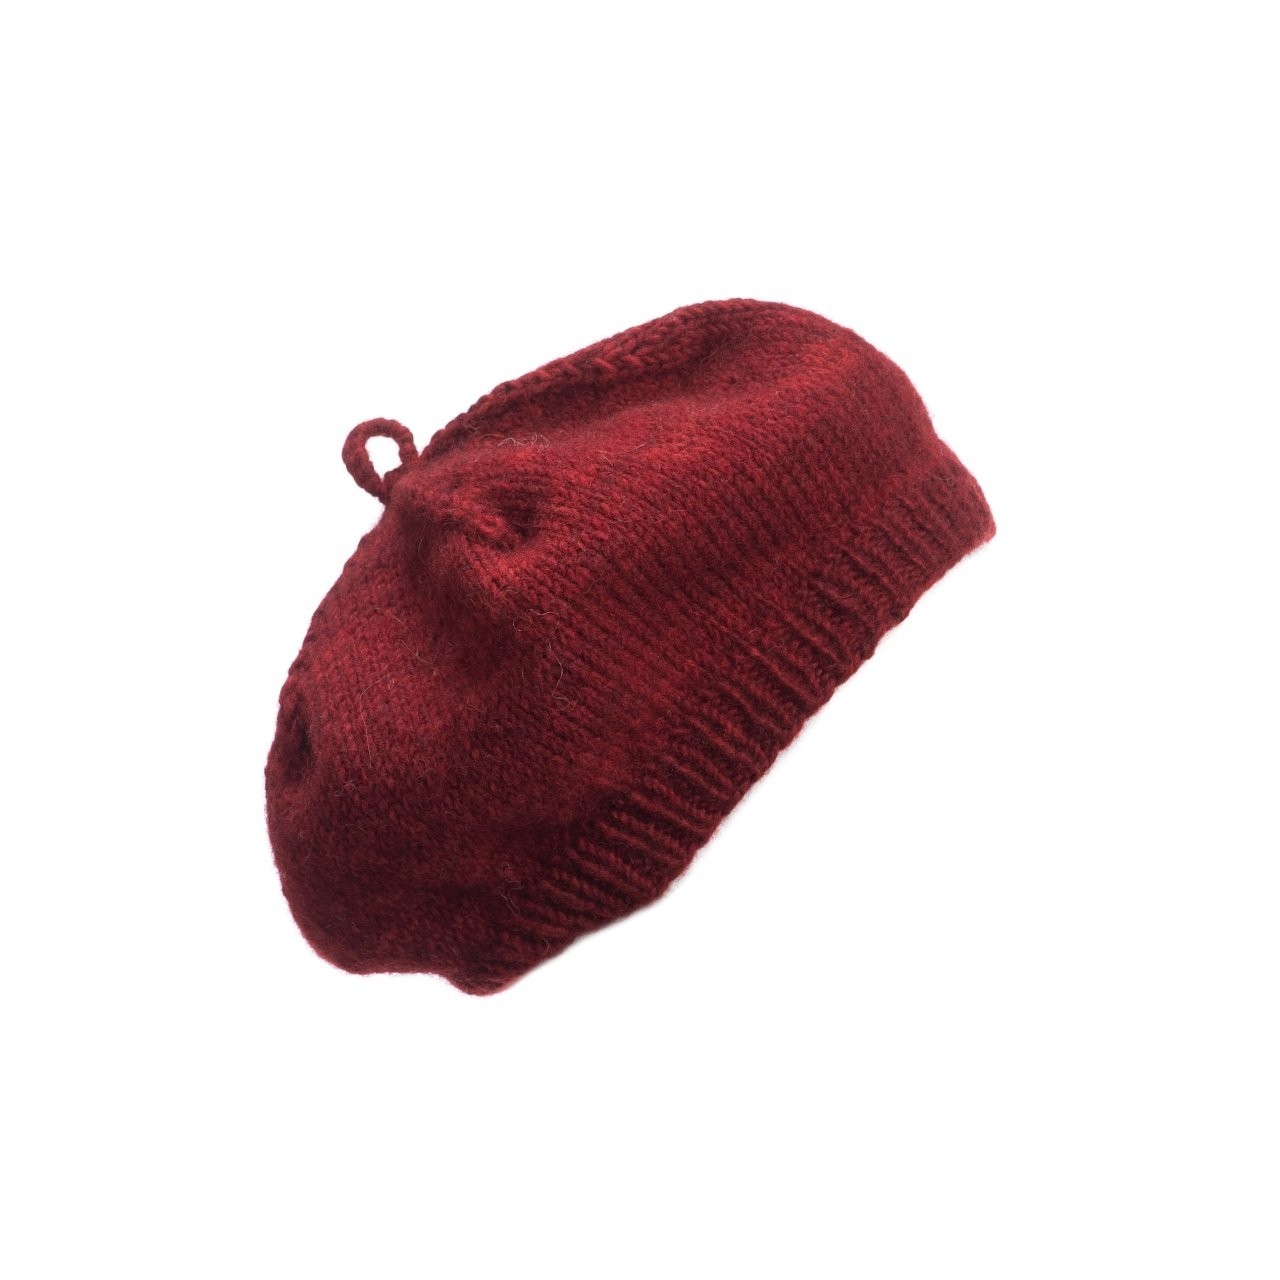 芬蘭 MYSSYFARMI BERET成人手工羊毛貝雷帽 (越橘紅)